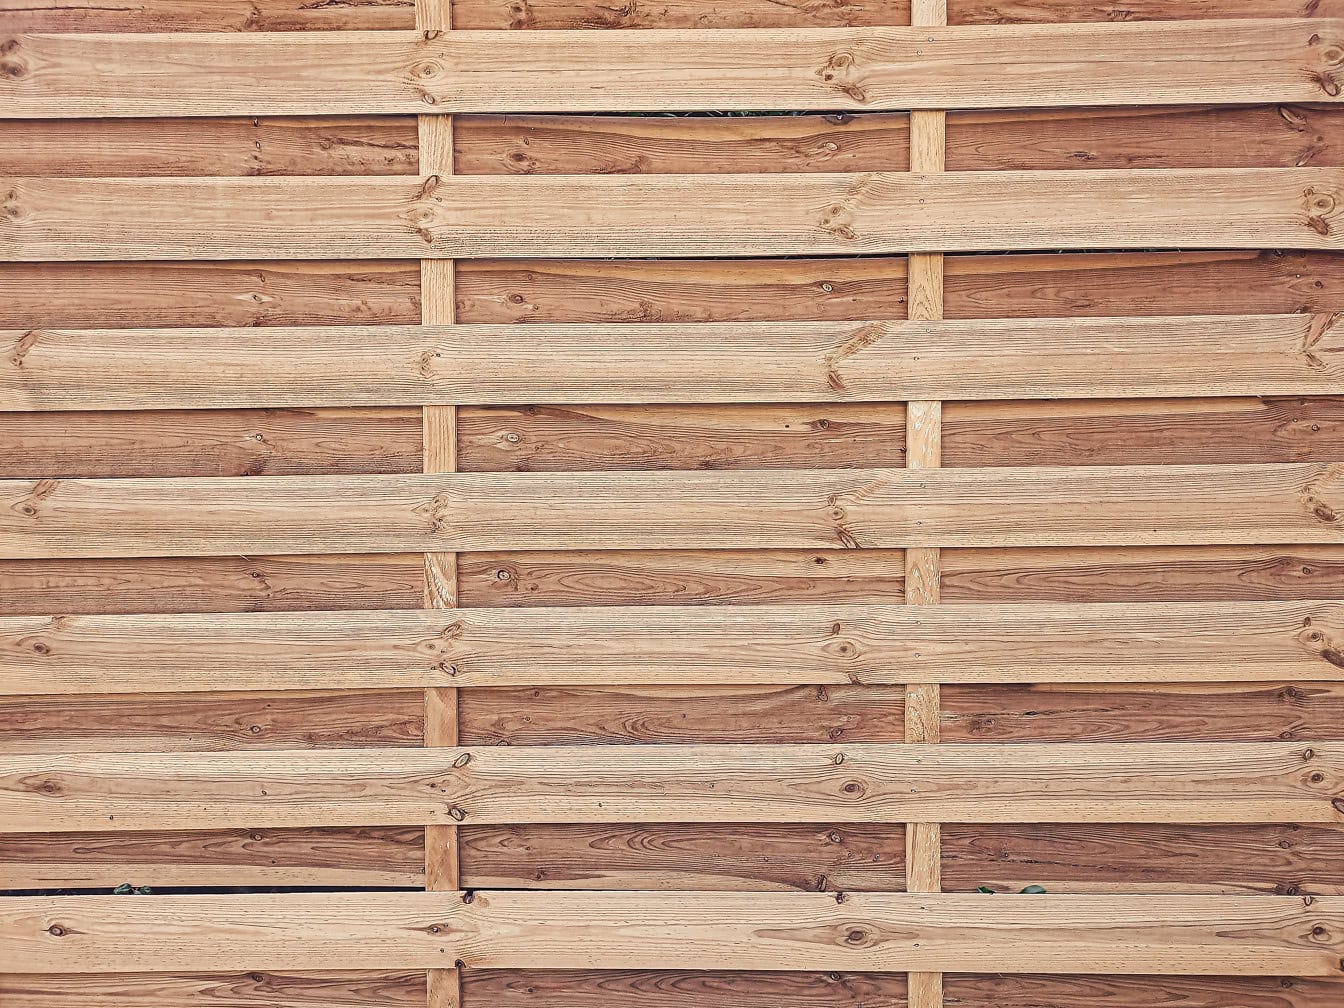 Kết cấu của bảng gỗ mộc mạc làm bằng những thanh thông mỏng xếp chồng lên nhau theo chiều ngang